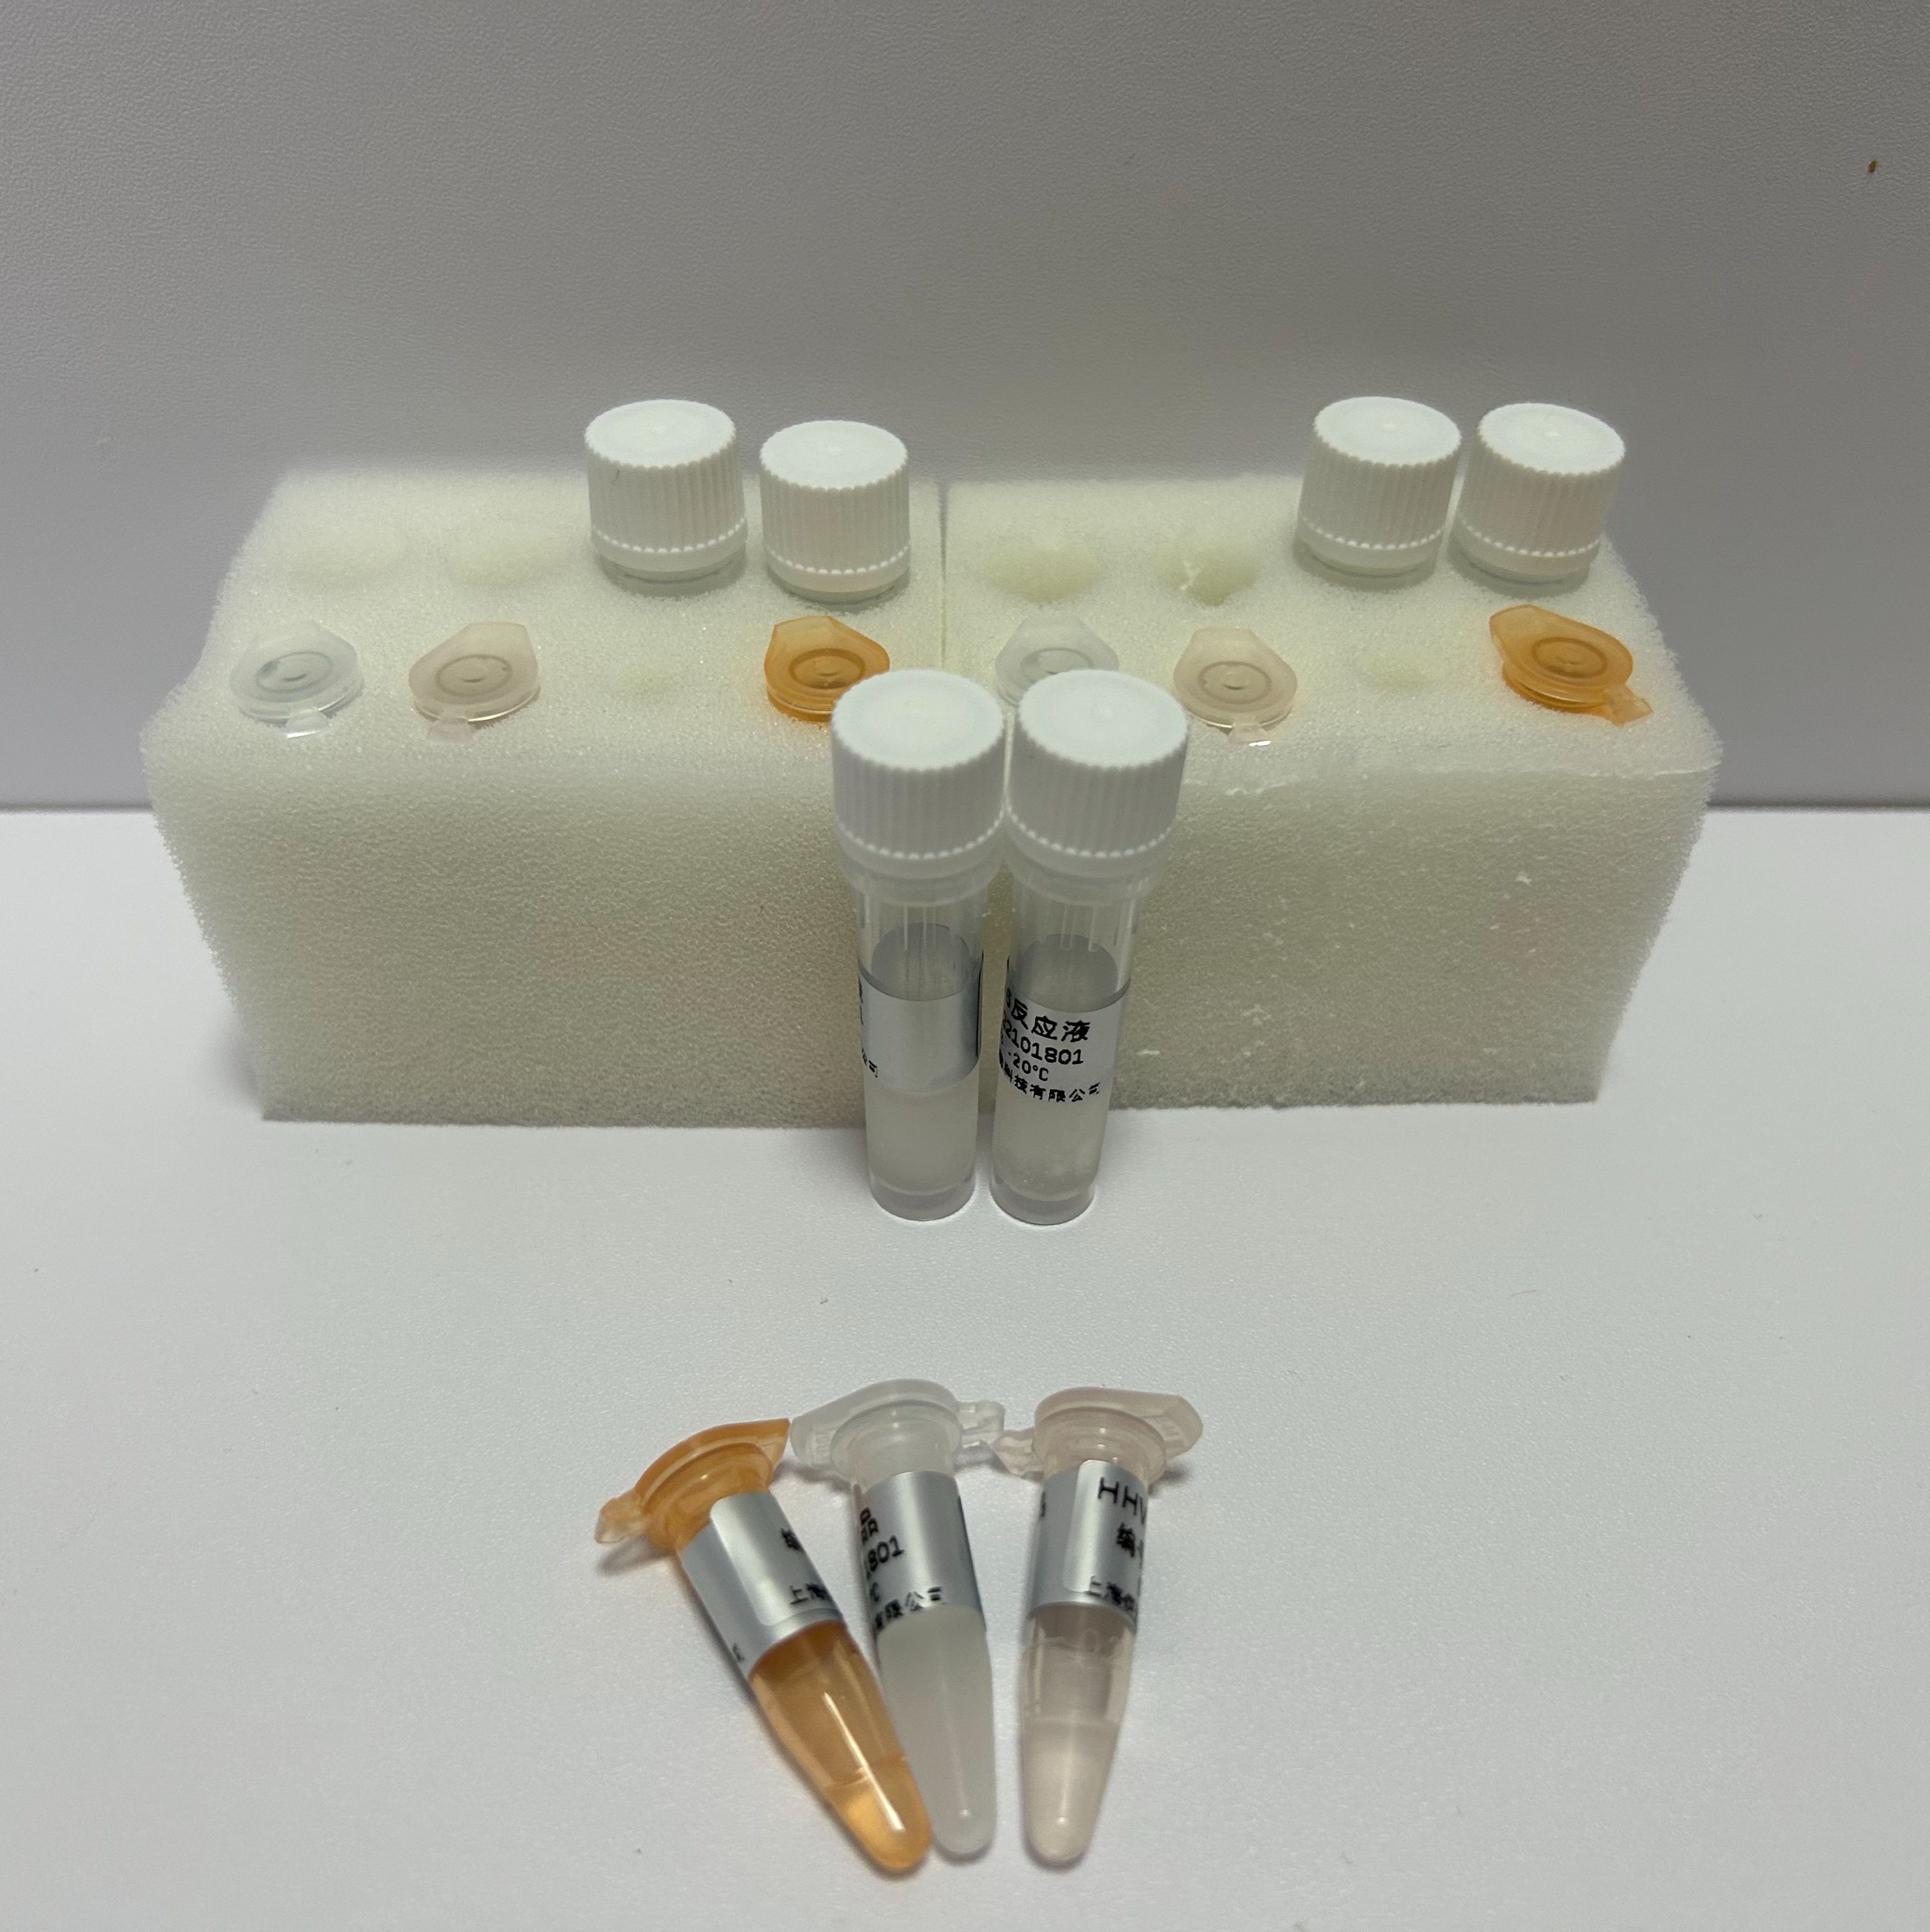 禽传染性支气管炎病毒通用探针法荧光定量RT-PCR试剂盒